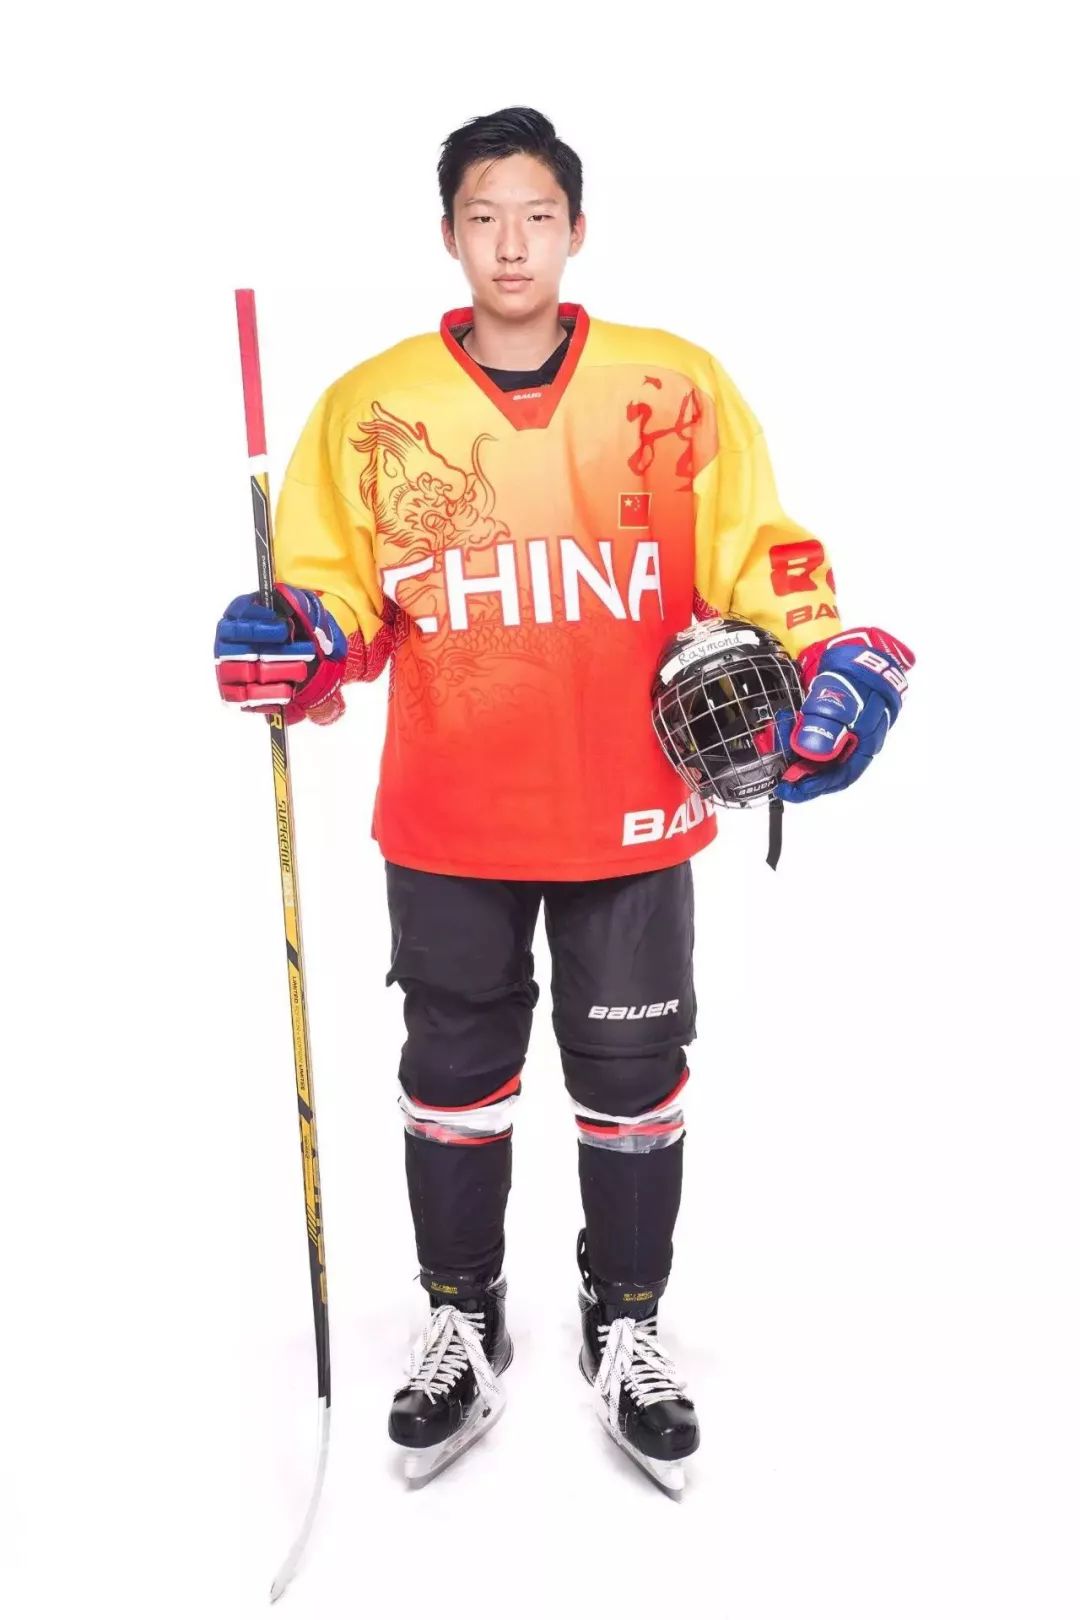 中国冰球服装图片